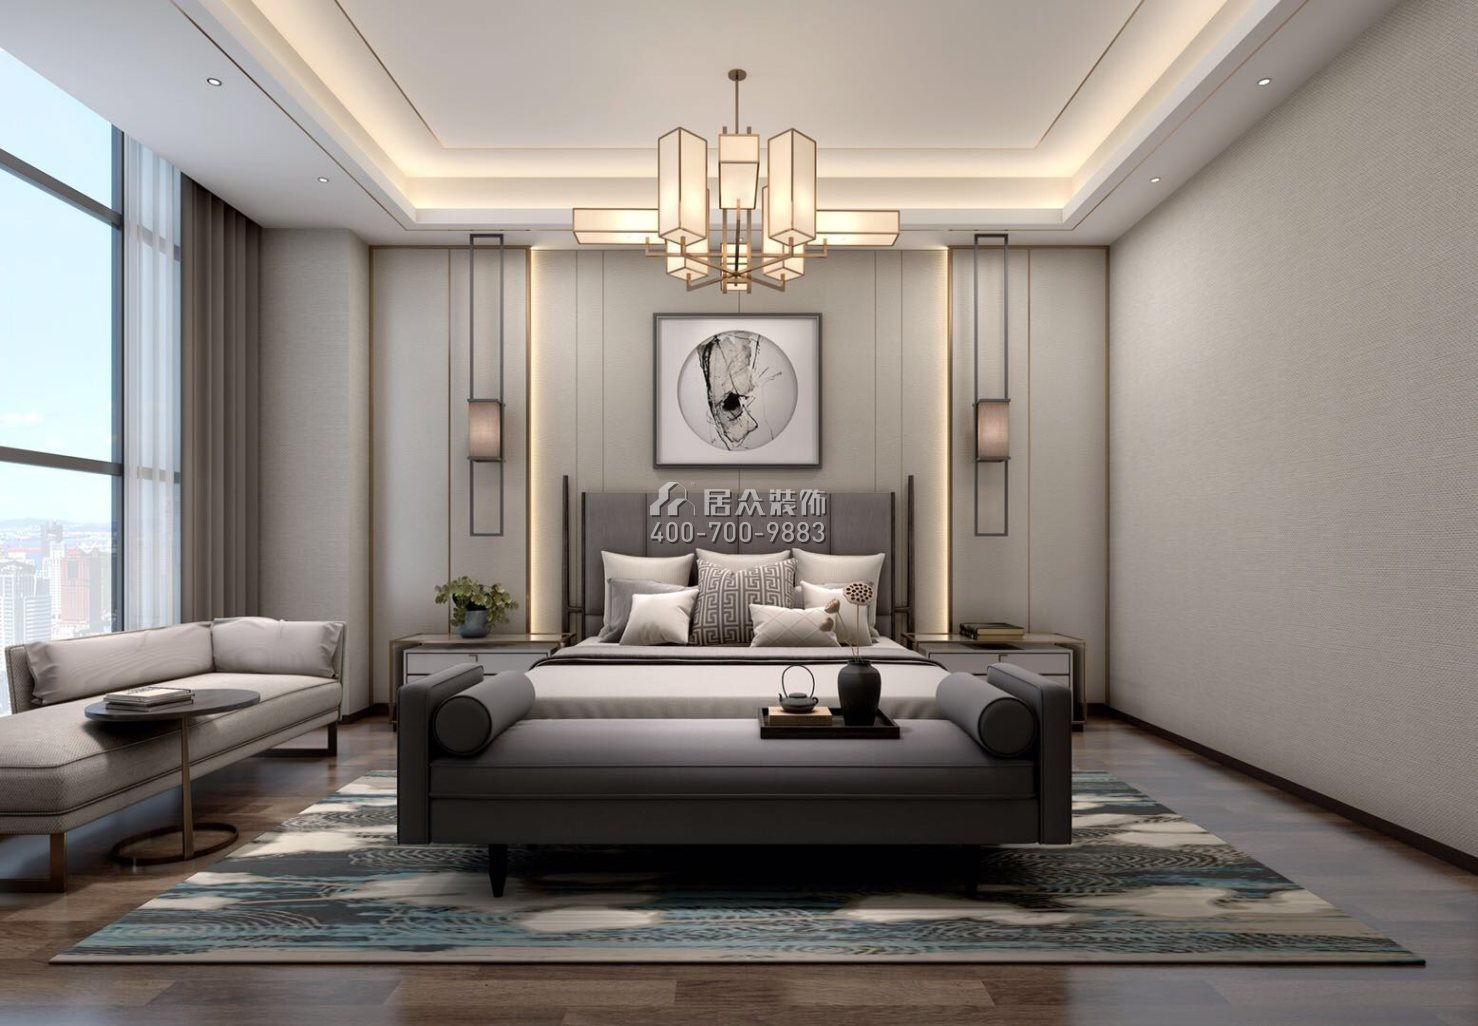 博林天瑞花园一期180平方米现代简约风格平层户型卧室装修效果图